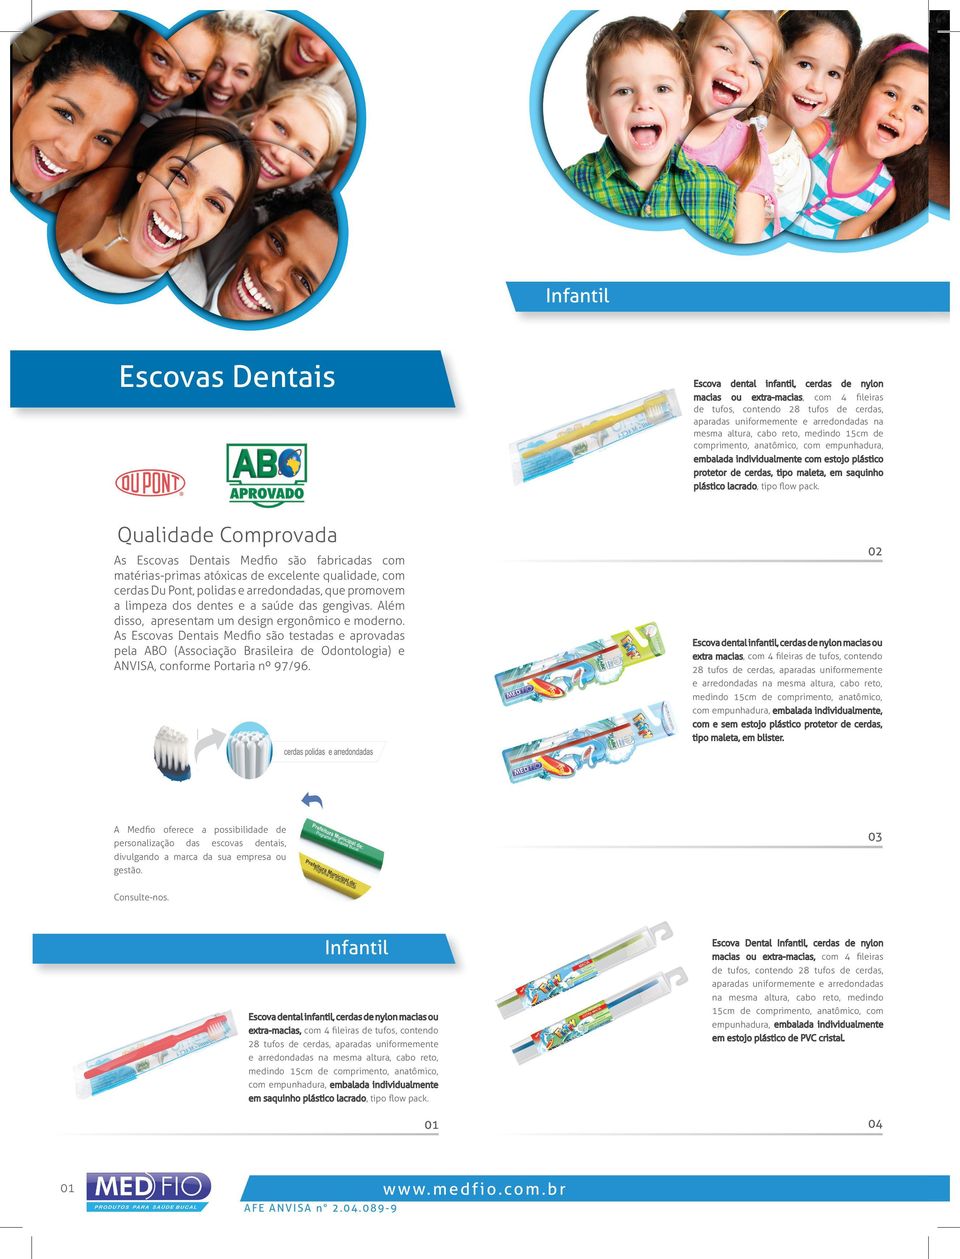 Qualidade Comprovada 02 As Escovas Dentais Medﬁo são fabricadas com matérias-primas atóxicas de excelente qualidade, com cerdas Du Pont, polidas e arredondadas, que promovem a limpeza dos dentes e a